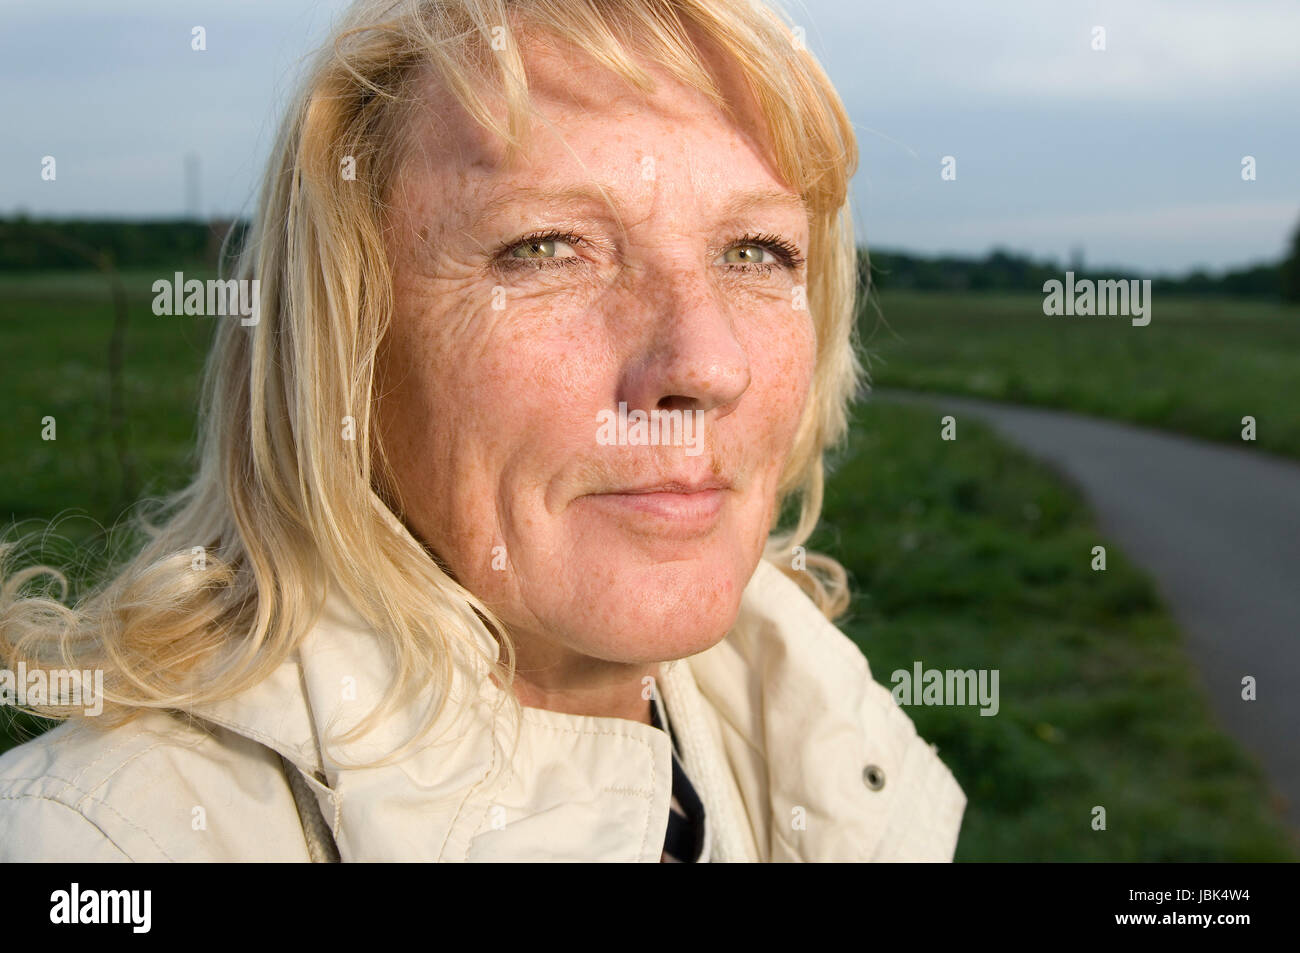 Kopf-und-Schulter-Porträt einer blonden reifen Frau in heller Jacke auf einer grünen Wiese mit Fußweg in die Kamera blickend Stock Photo